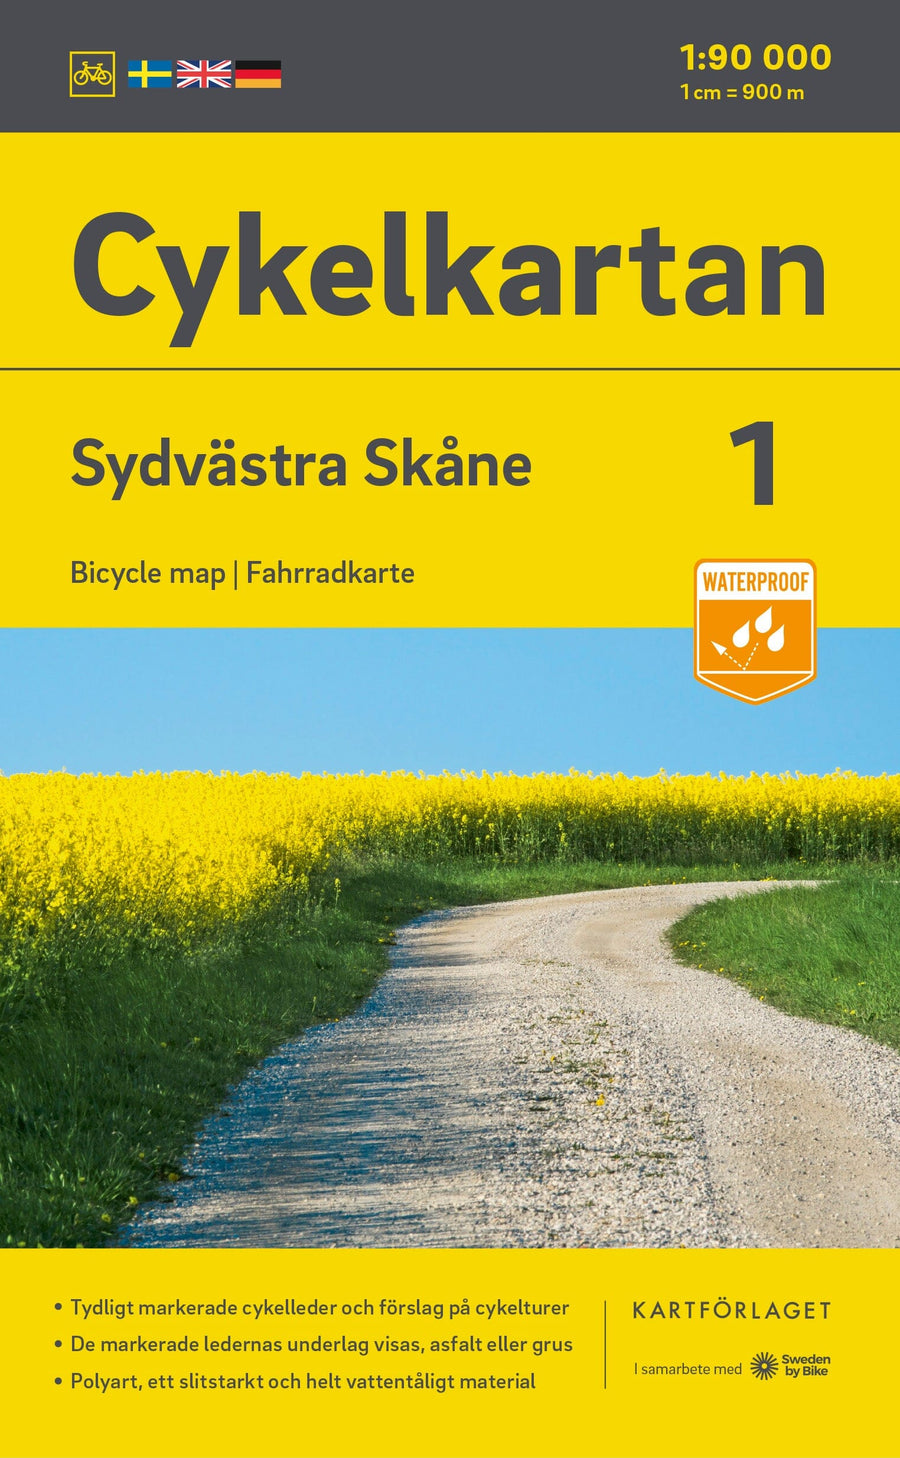 Carte cycliste n° 01 - Skane Sud-ouest (Suède) | Norstedts carte pliée Norstedts 